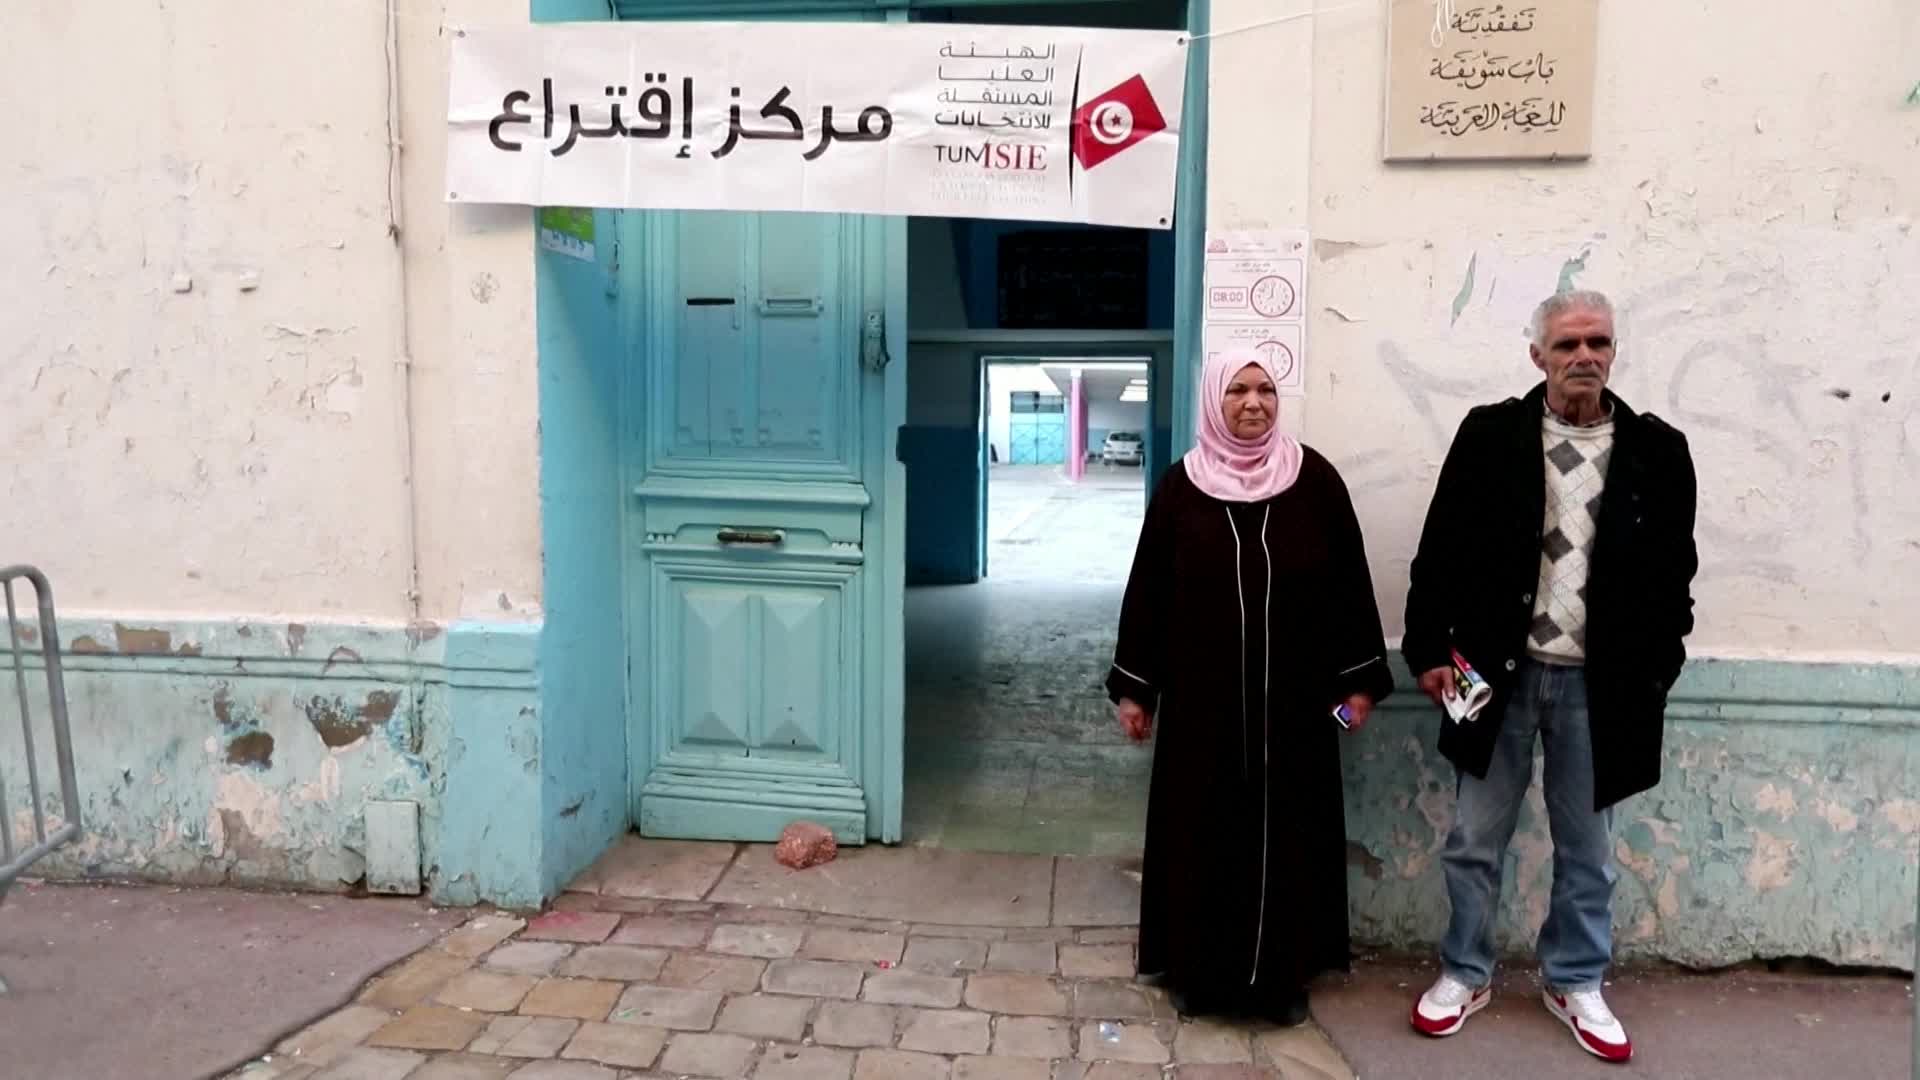 نسبة الإقبال في الانتخابات التونسية أقل من 9%